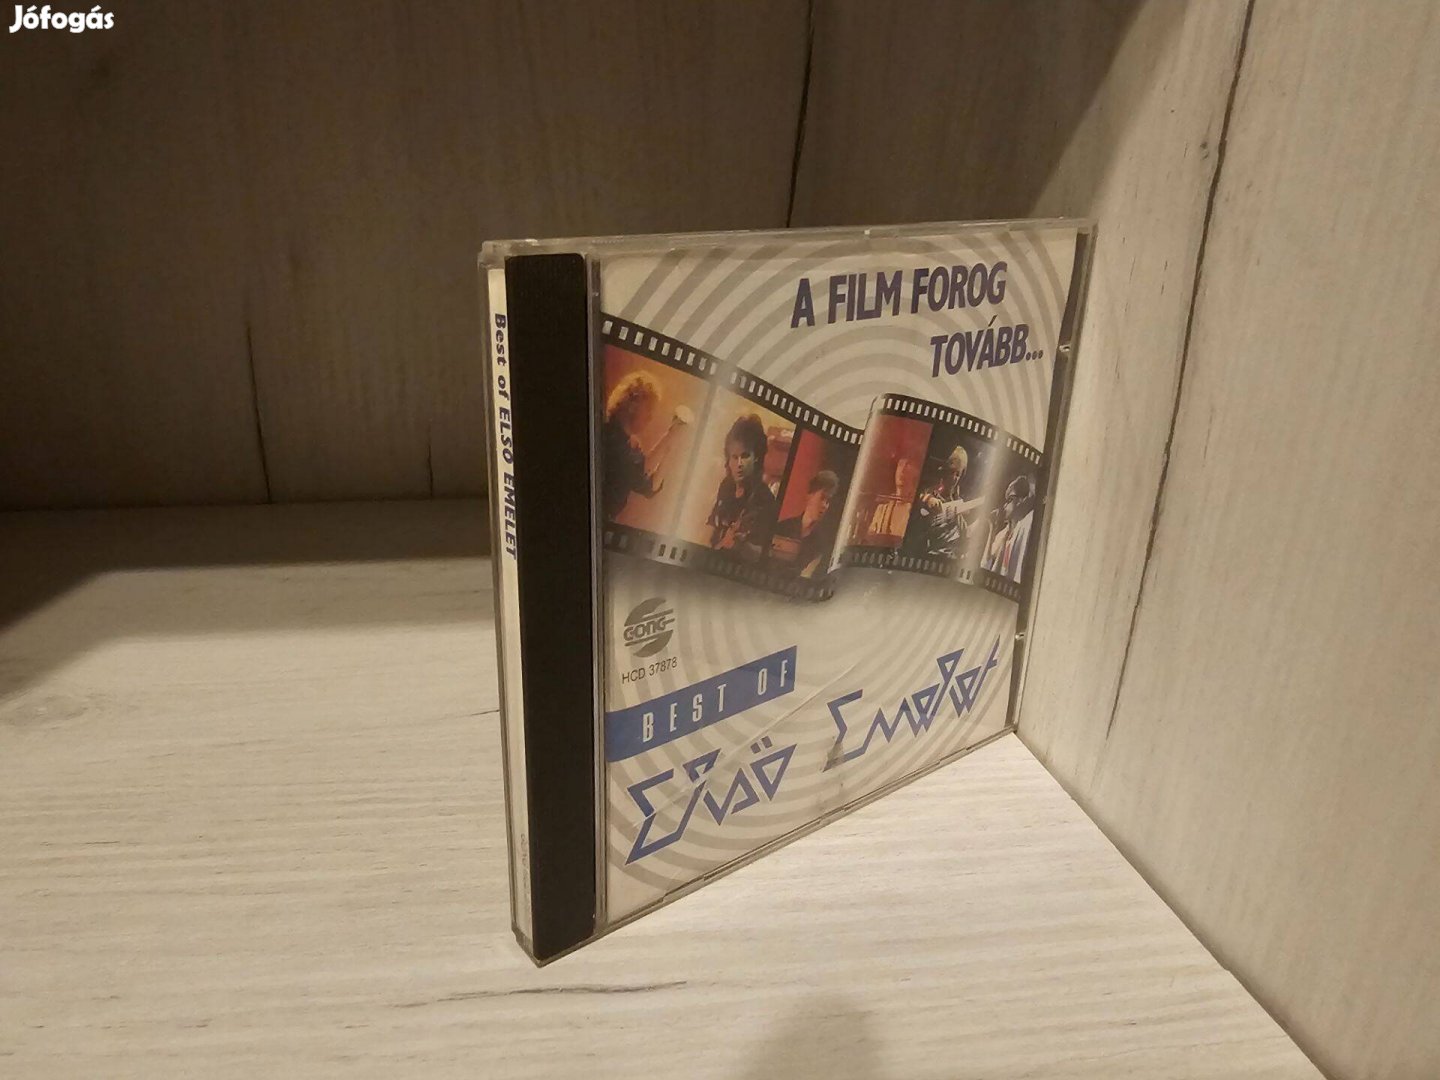 Első Emelet Best Of Első Emelet A Film Forog Tovább. CD